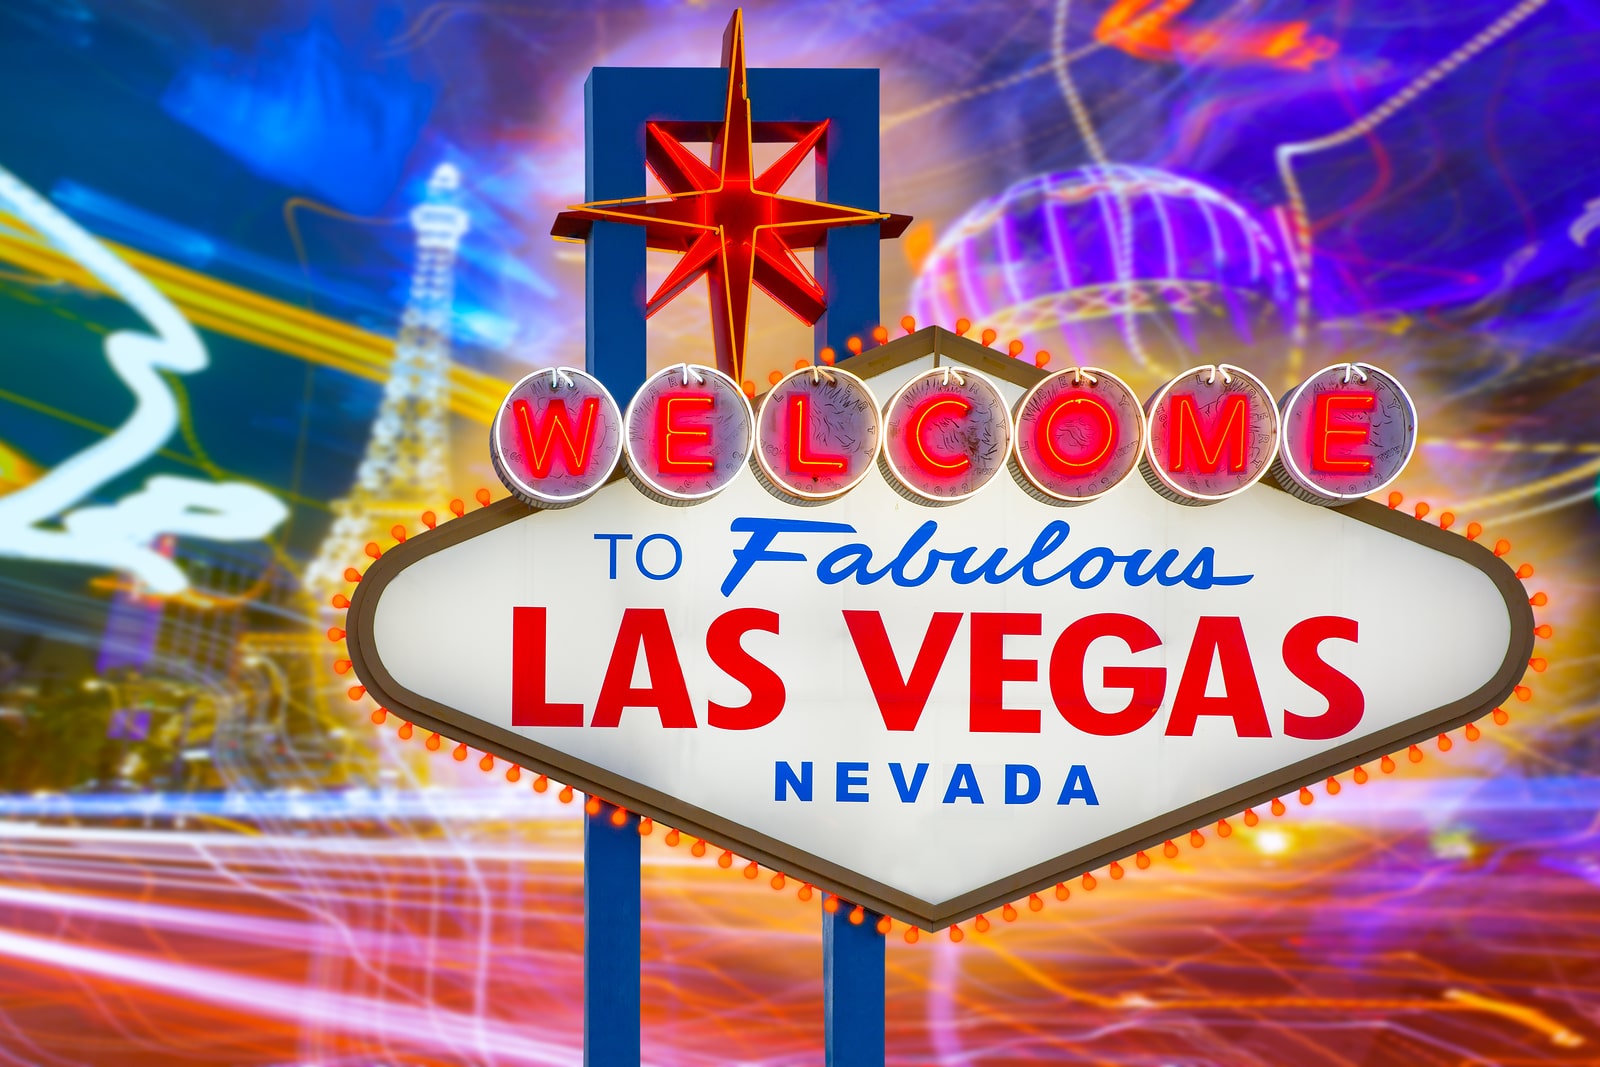 ¿Cómo lograr unas vacaciones de verano perfectas en Las Vegas? Con Sapphire Resorts Group